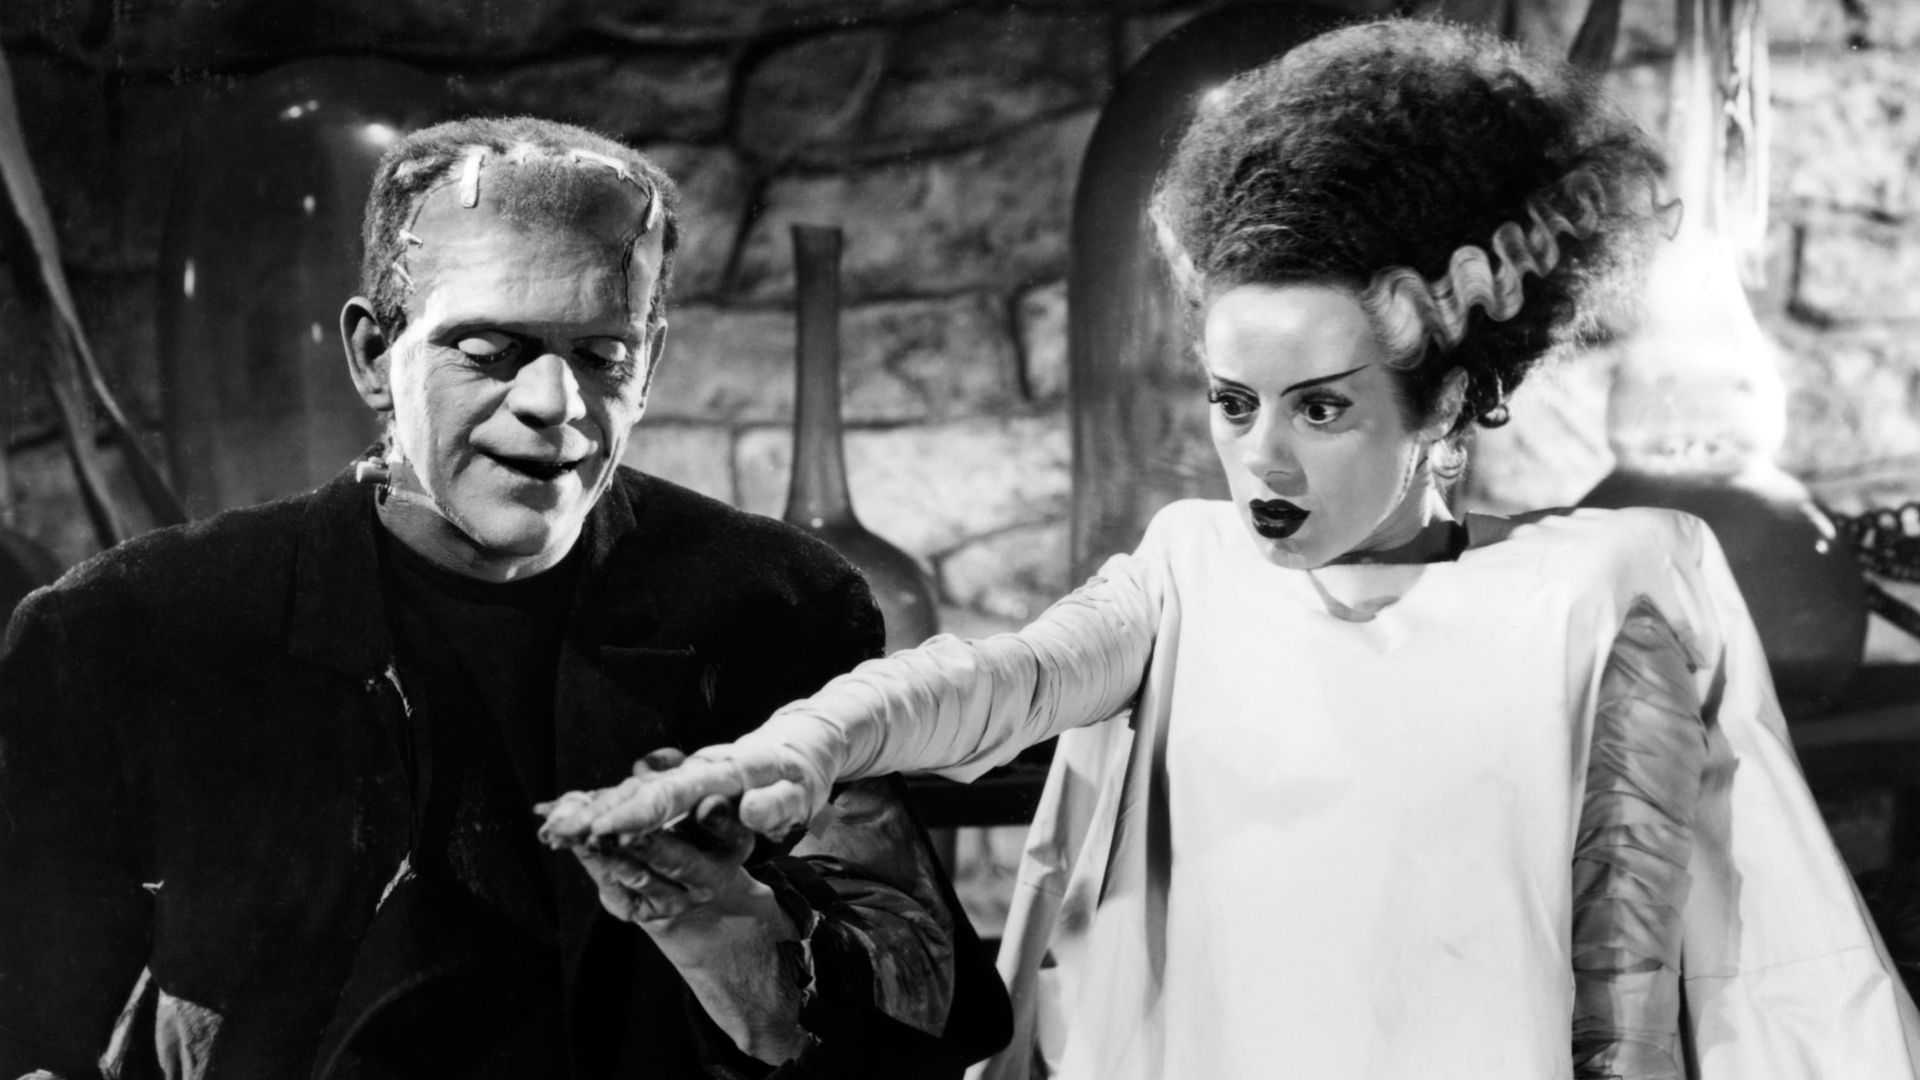 The Bride of Frankenstein background